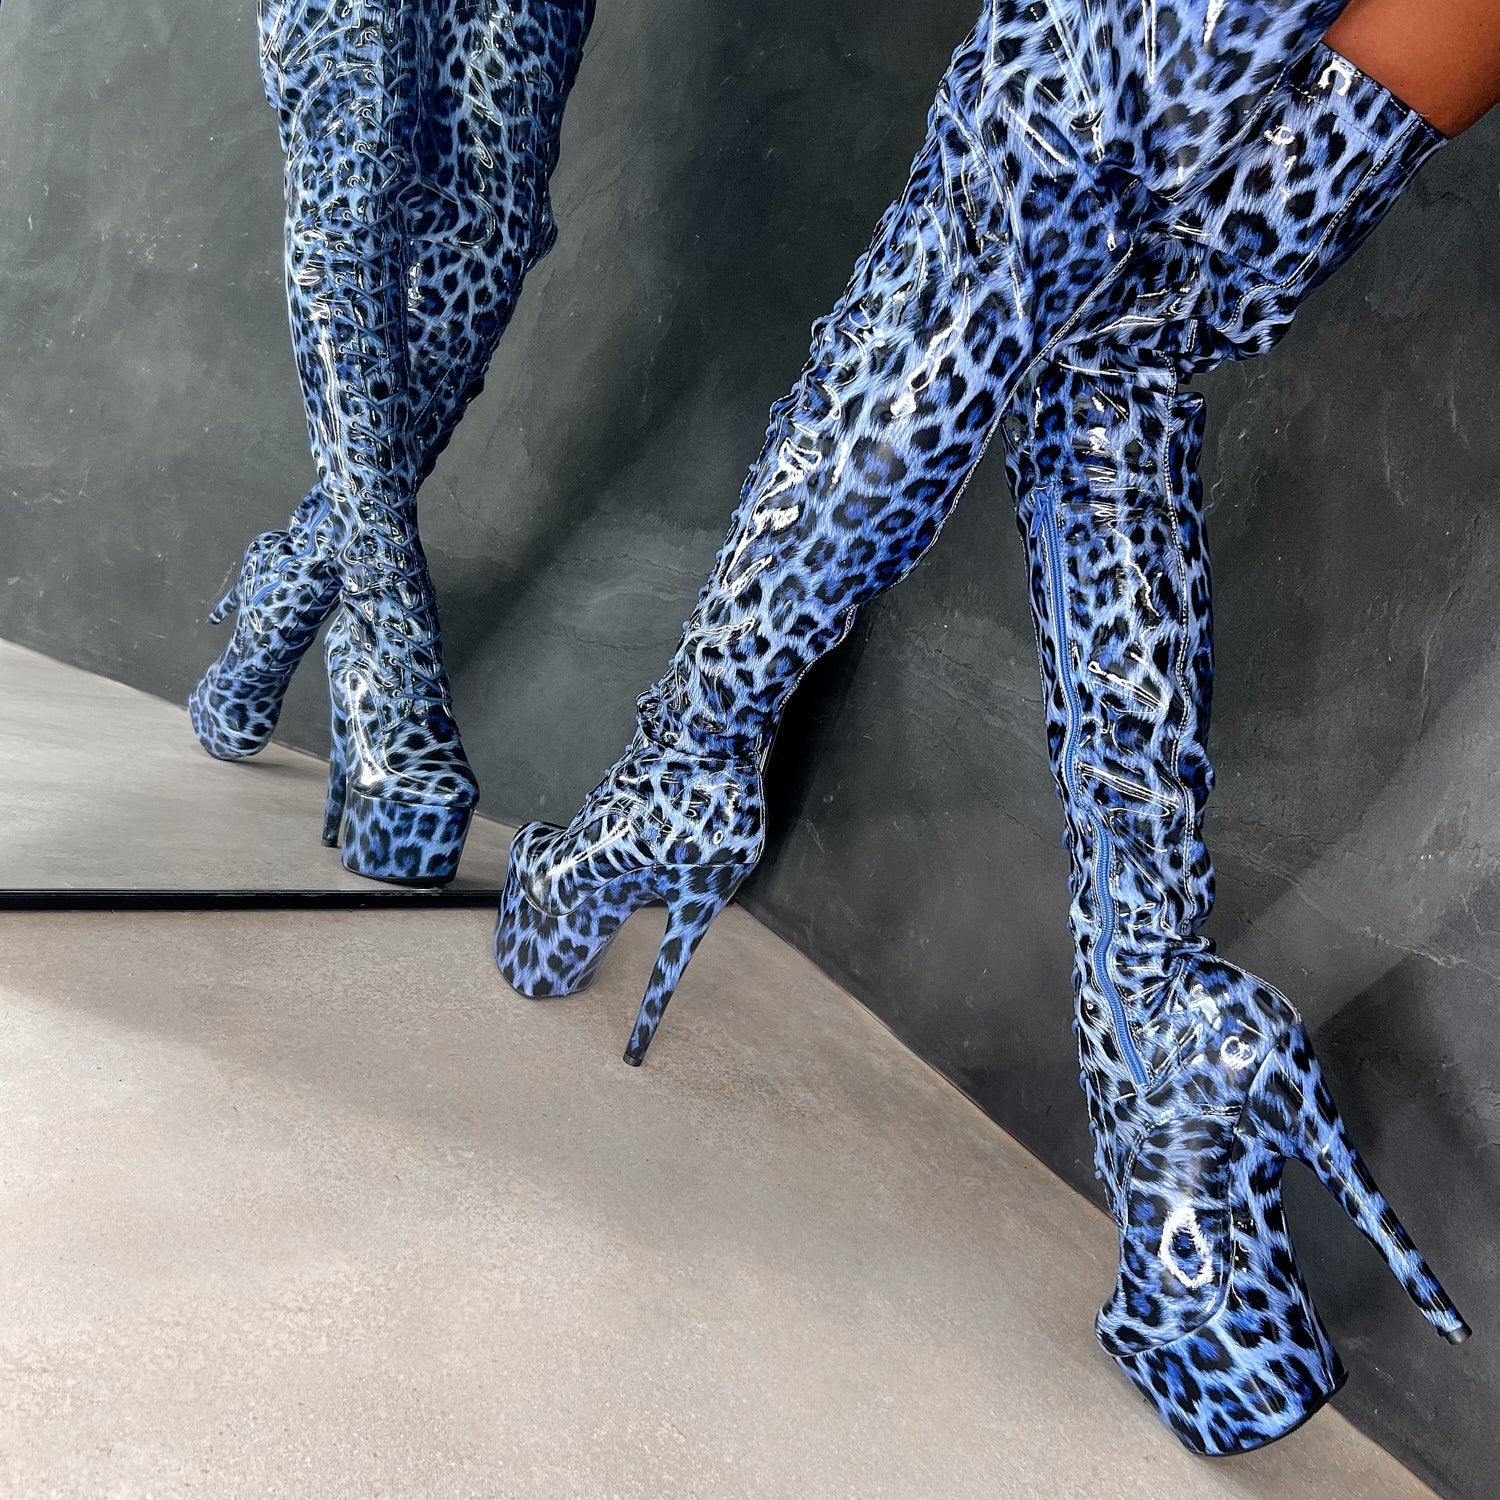 Blue Leopard Thigh High - 7 INCH, stripper shoe, stripper heel, pole heel, not a pleaser, platform, dancer, pole dance, floor work